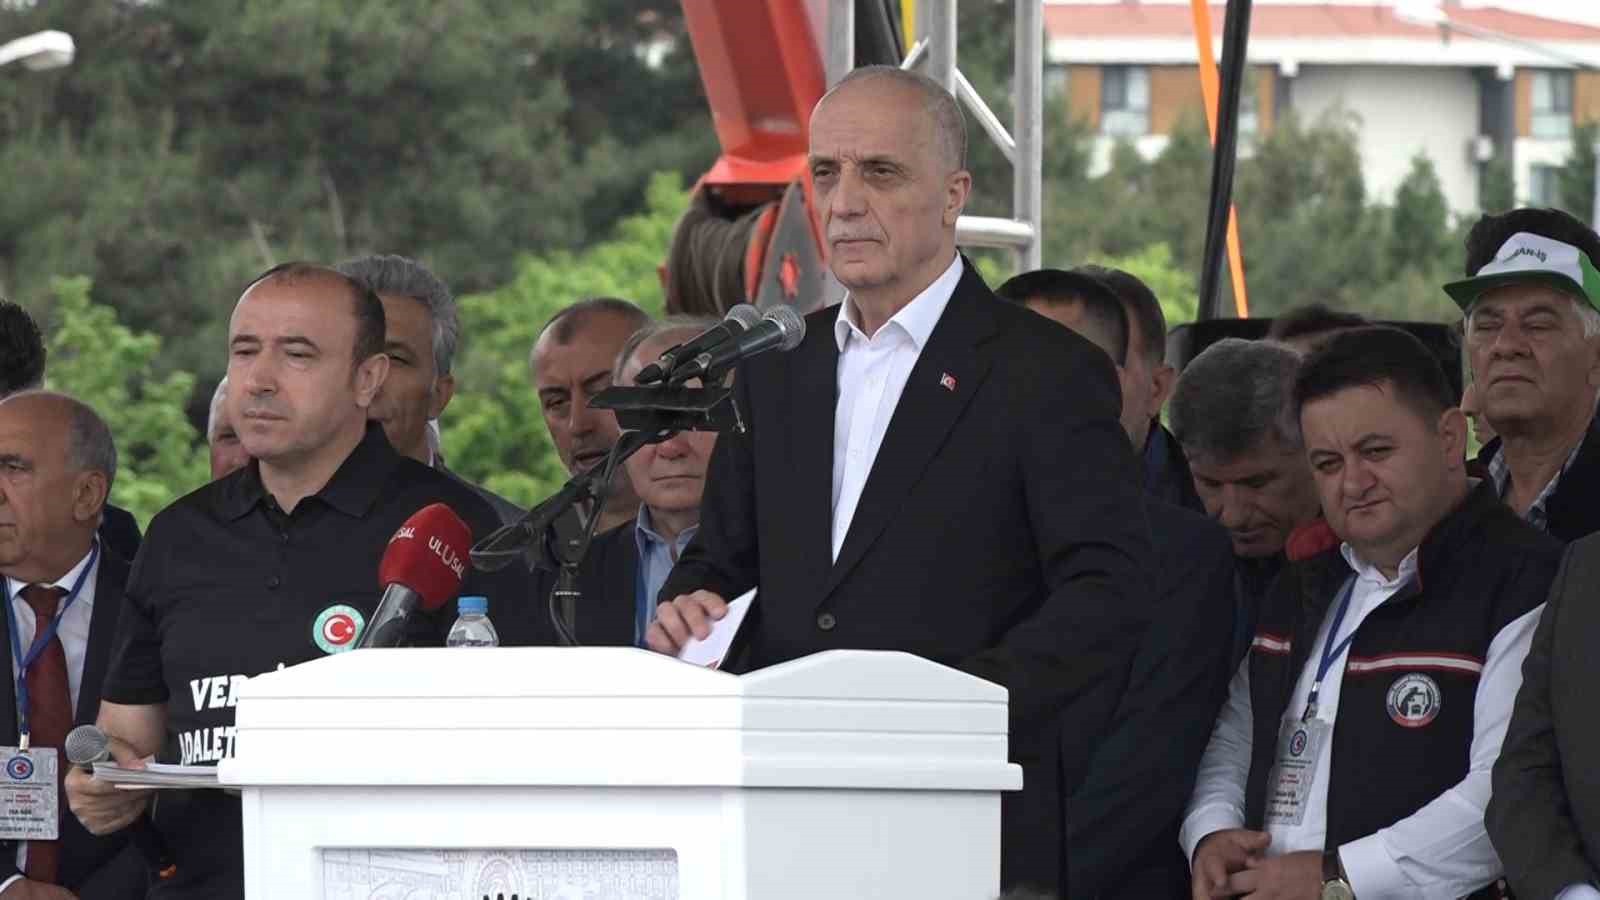 TÜRK-İŞ Genel Başkanı Atalay: 